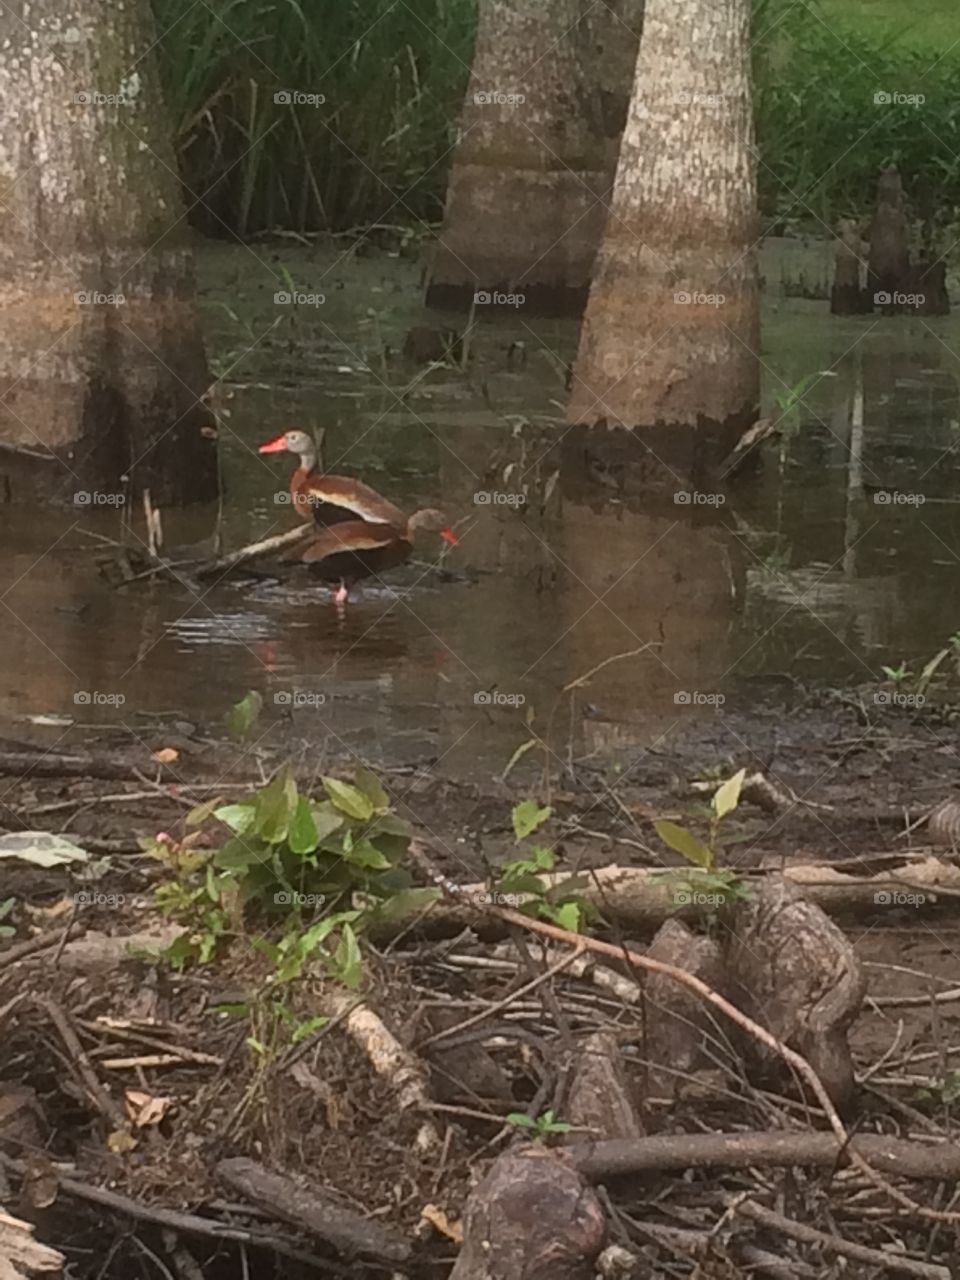 Duck
Swamp